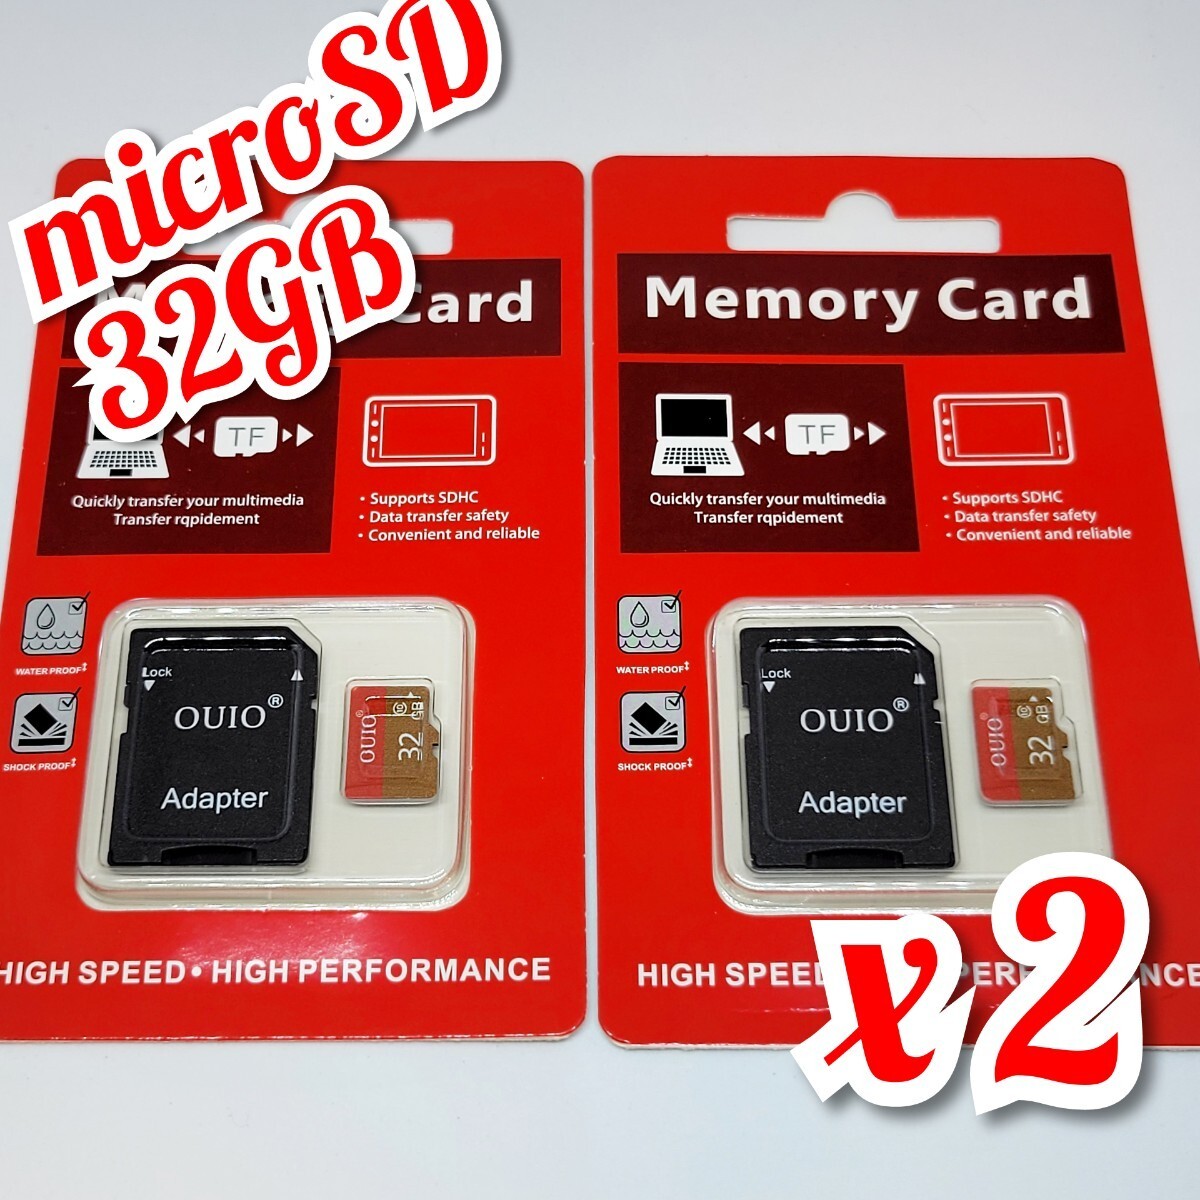 【送料無料】2枚セット マイクロSDカード 32GB 2枚 class10 2個 高速 microSD microSDHC マイクロSD OUIO 32GB RED-GOLD _画像1